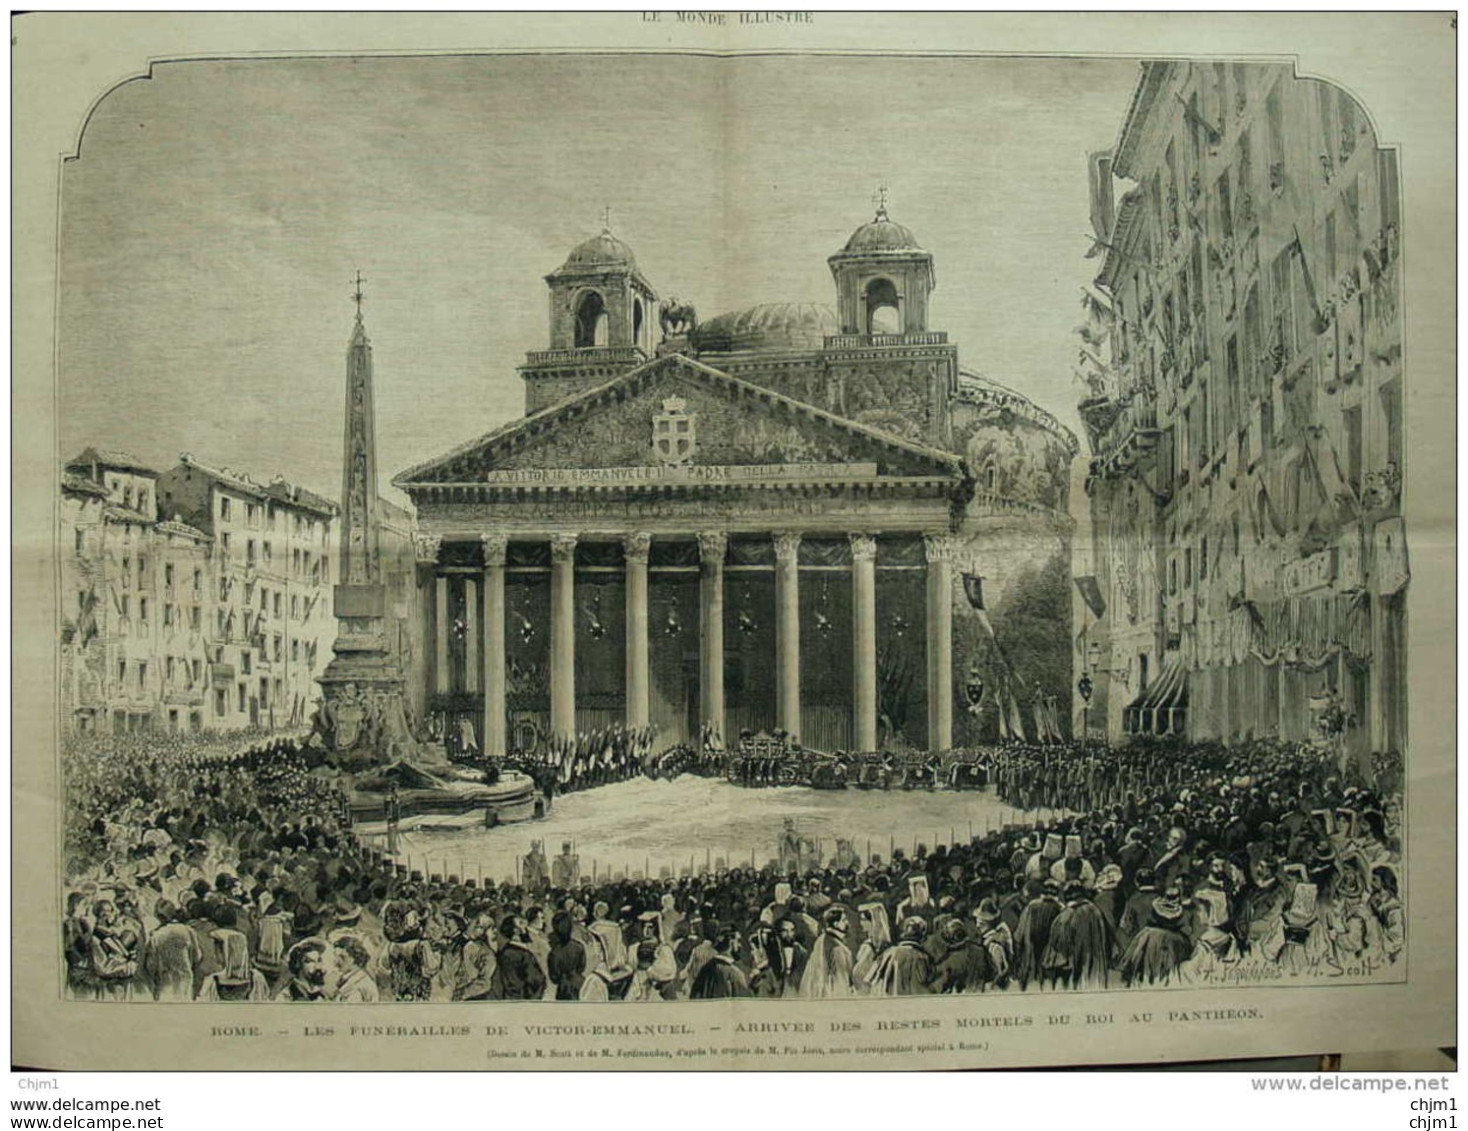 Rome - Les Funérailles De Victor-Emmanuel - Arrivée Des Restes Mortels Du Roi Au Pathéon - Page Original 1878 - Documents Historiques